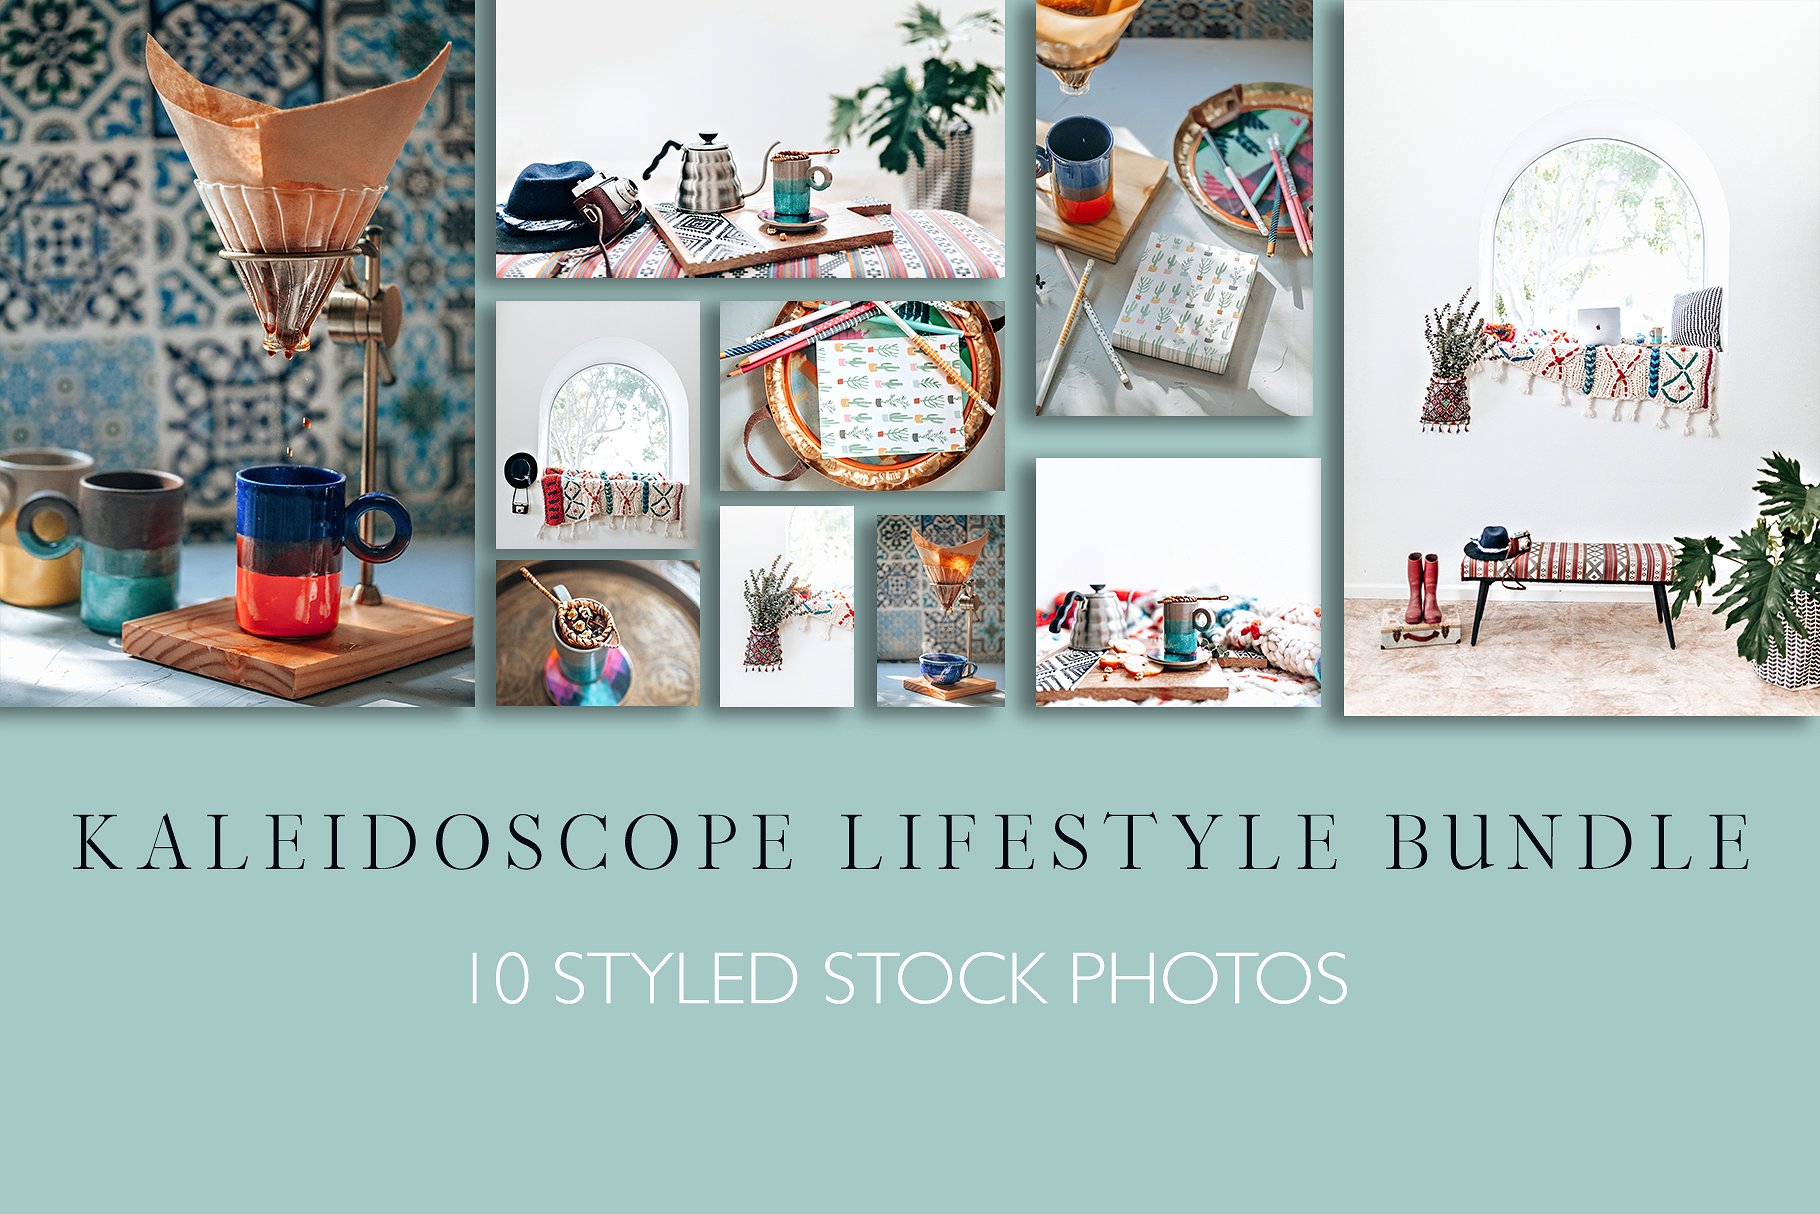 30张高分辨率的万花筒生活照片 30 Kaleidoscope Lifestyle Photo Bundle插图